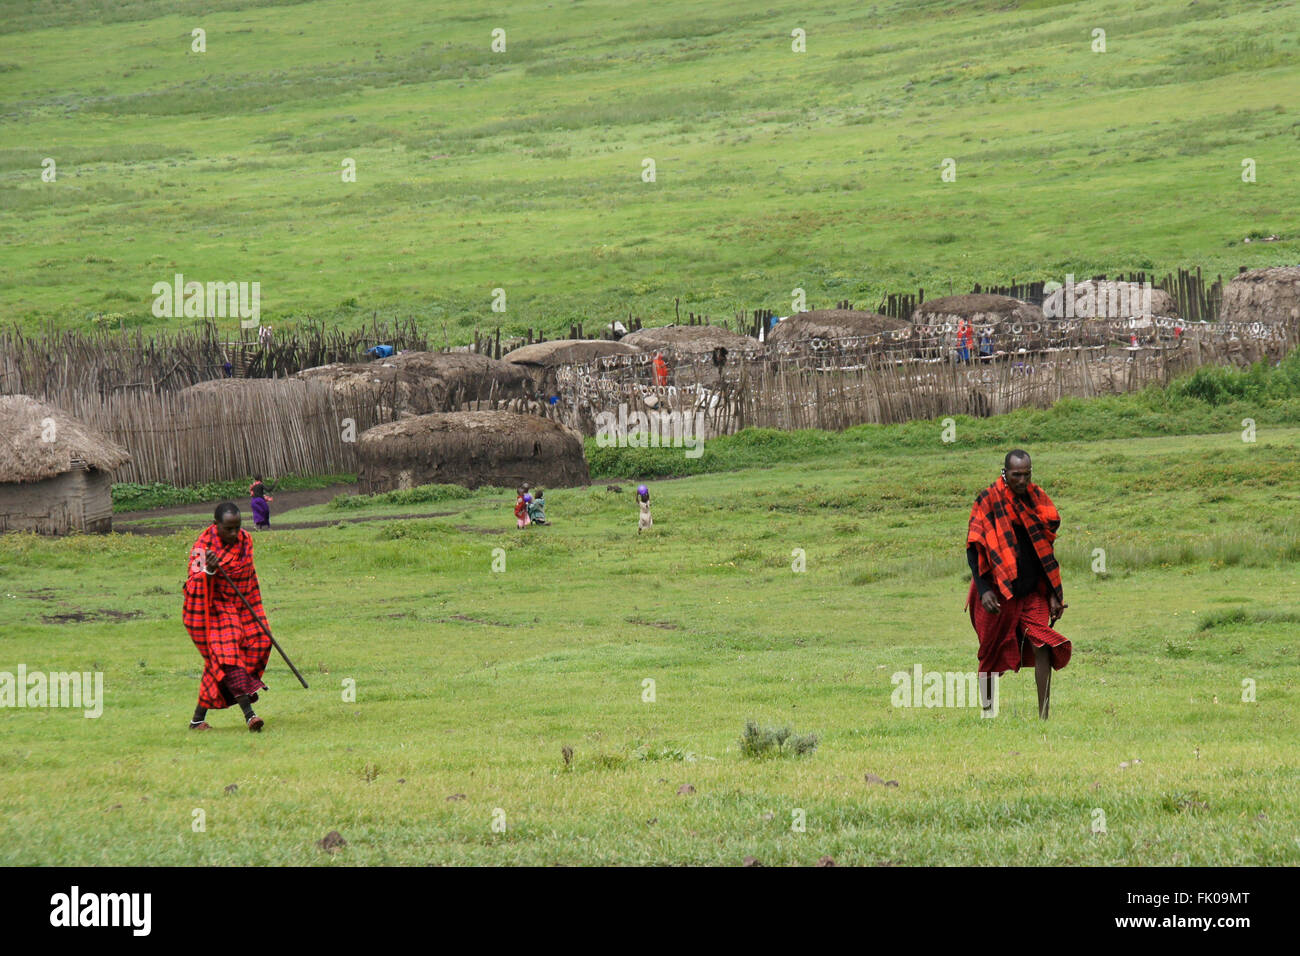 La tribu masaï (Masai) à l'extérieur de leur village, la Ngorongoro Conservation Area, Tanzania Banque D'Images